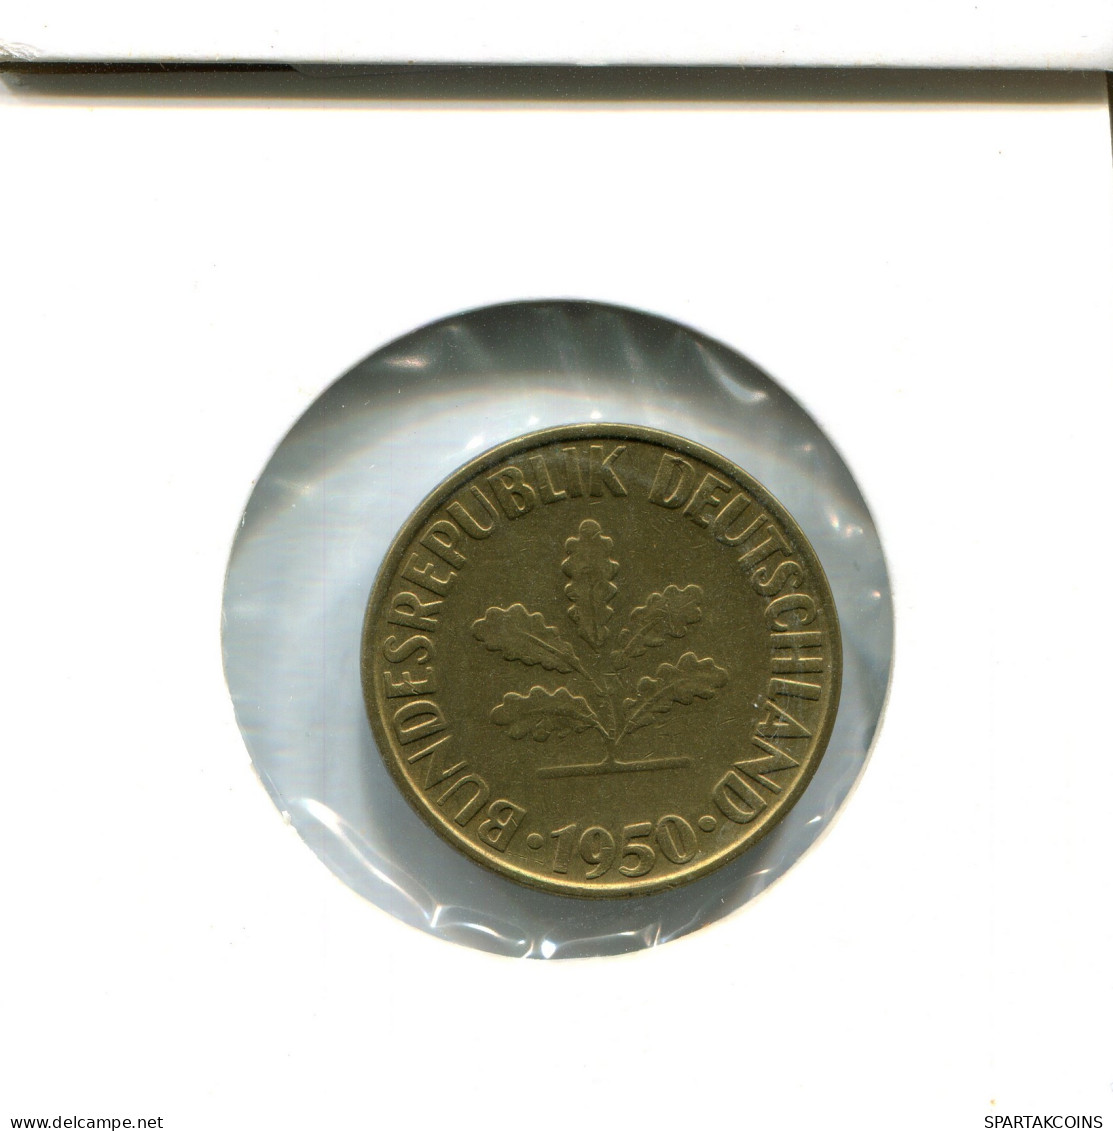 10 PFENNIG 1950 G GERMANY Coin #AW468.U - 10 Pfennig